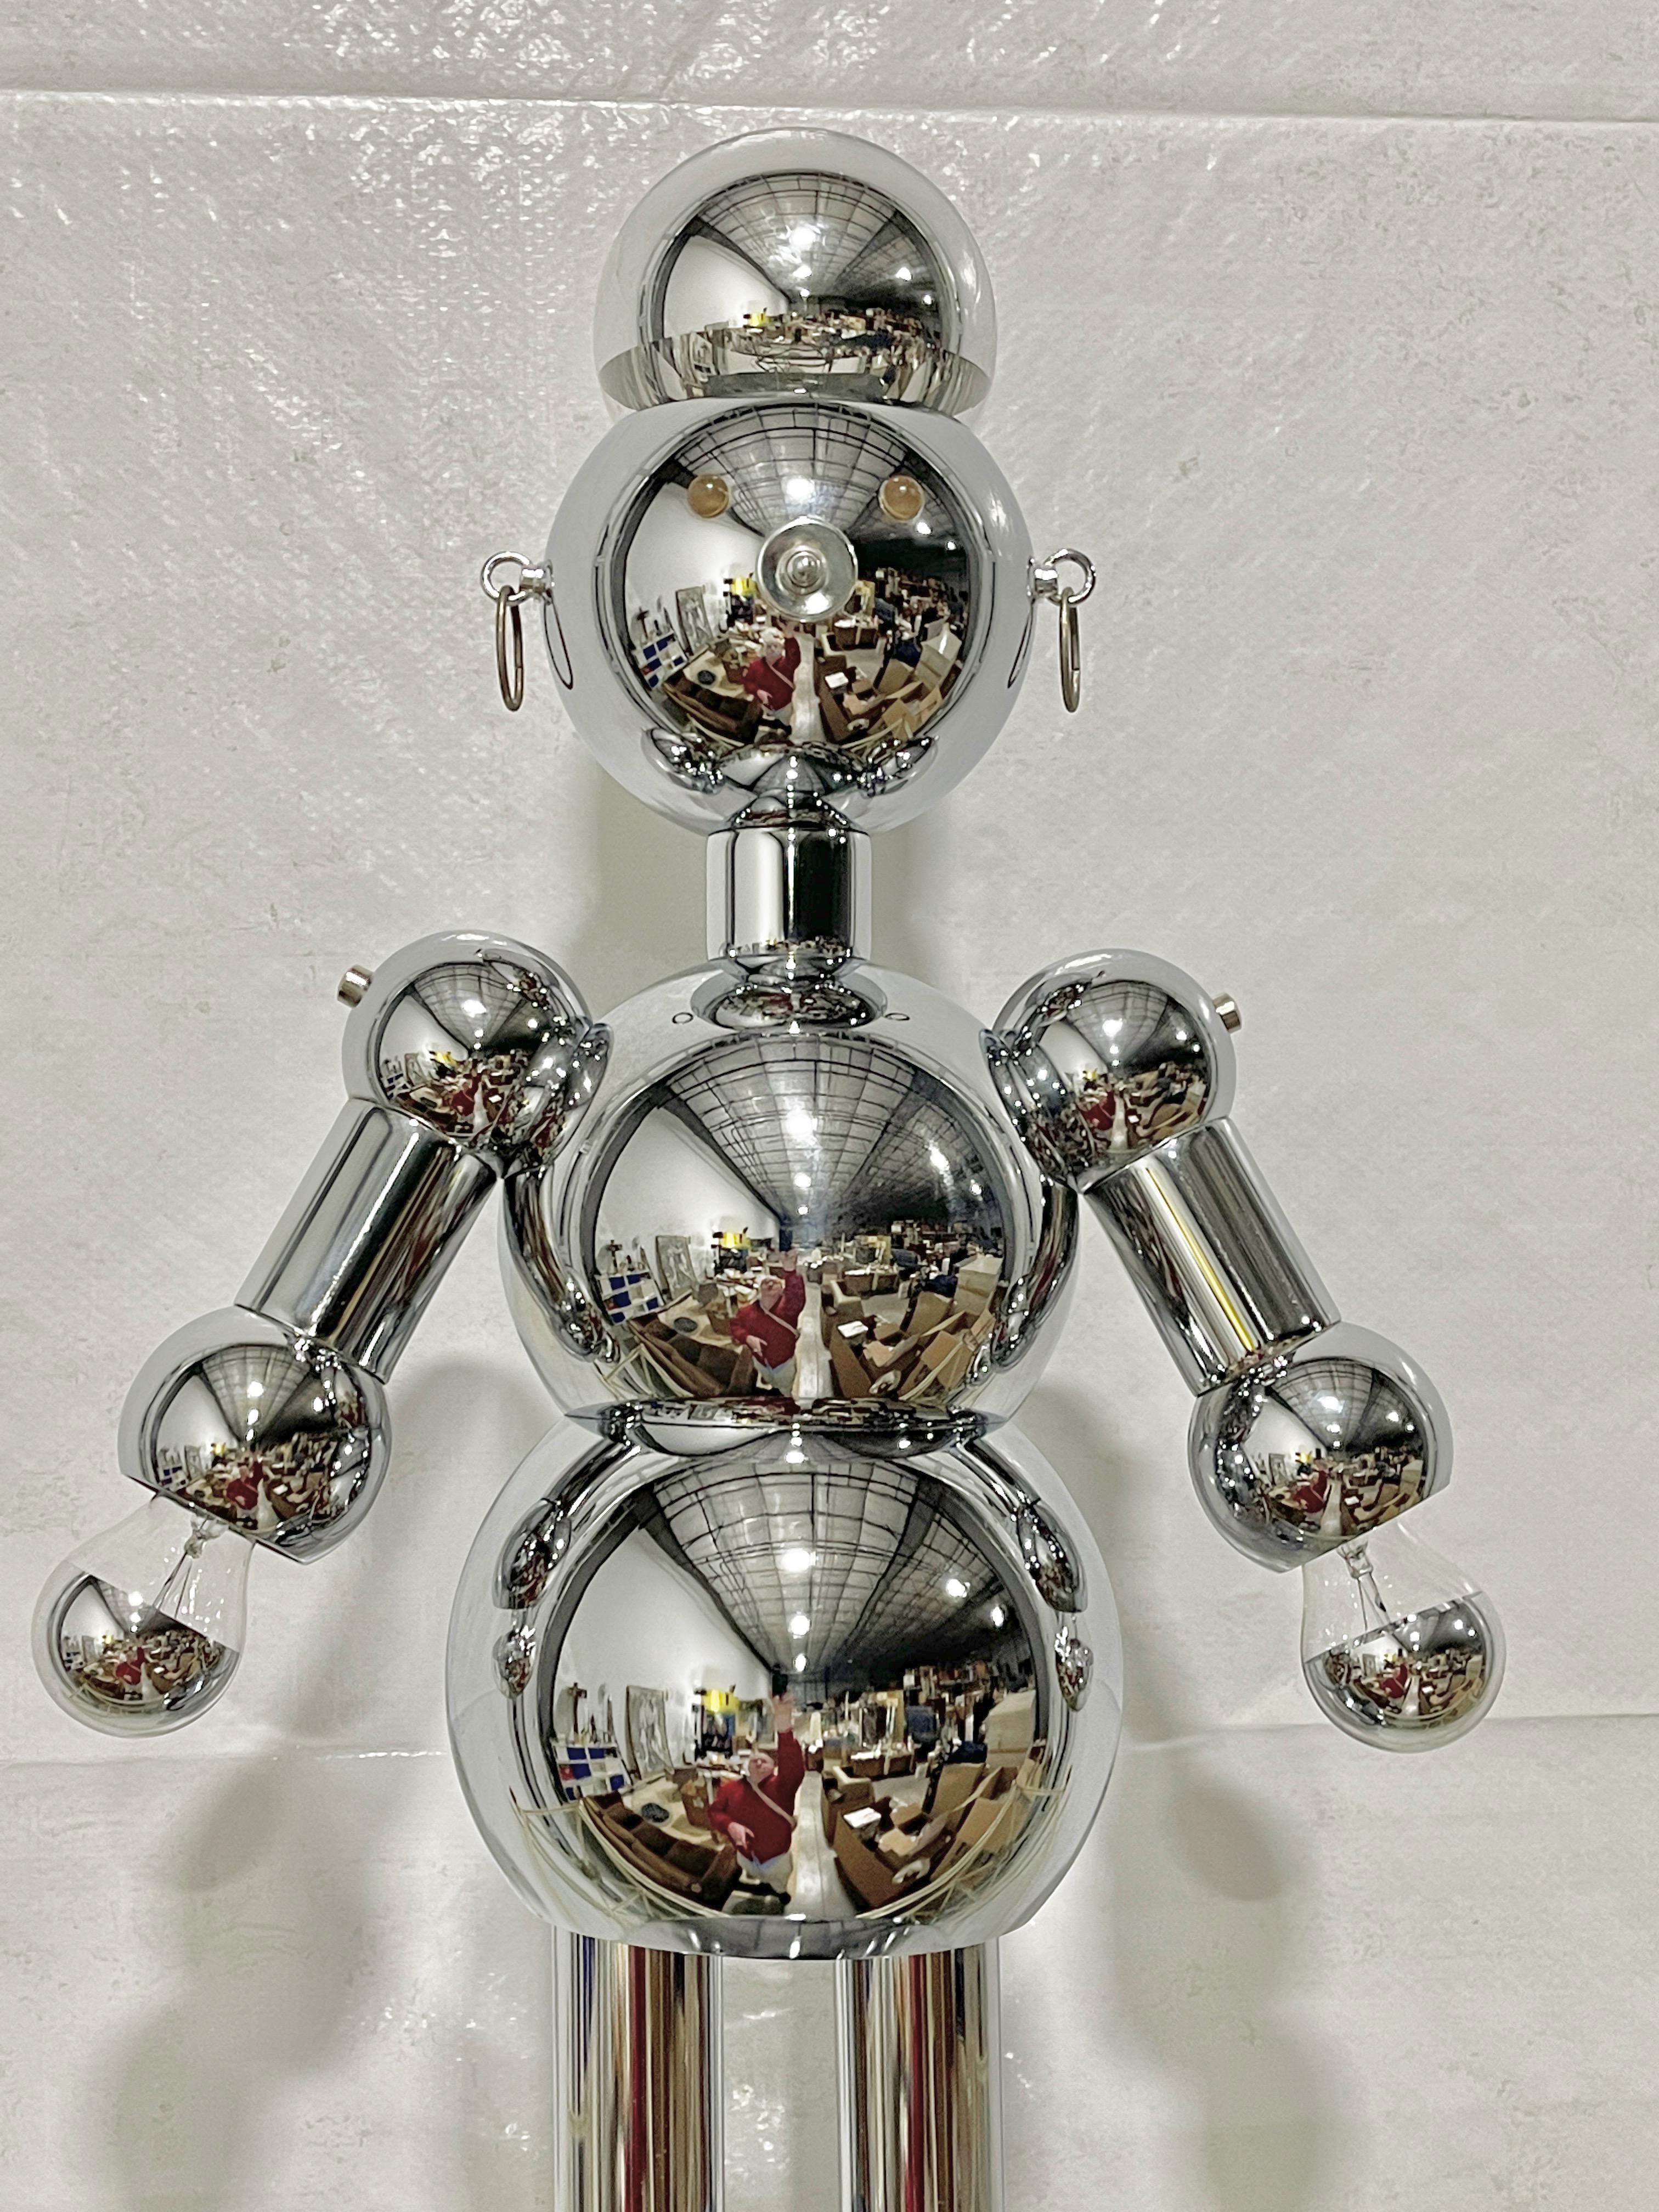 Lampe sur pied robot chromée très désirable par Torino Lamps, 1978.
Souvent considérés comme d'origine italienne, ce robot et d'autres lampes de caractère ont été conçus et produits en Floride par Atrio Consolidated Industries, Inc. dba Torino